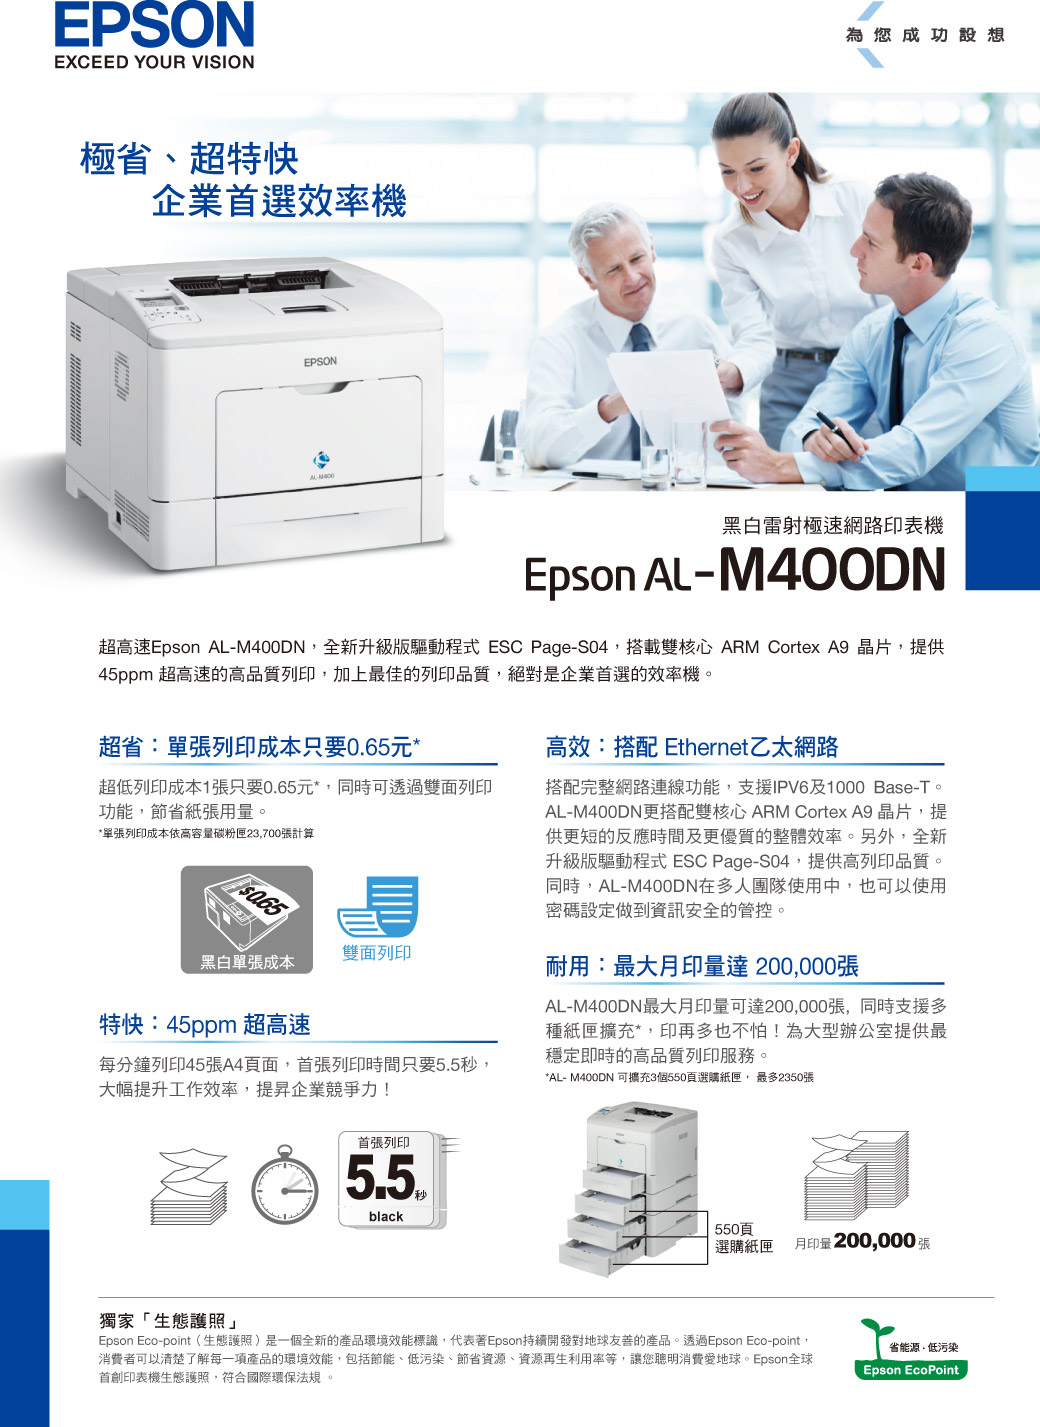 EPSONEXCEED YOUR VISION極省、超特快企業首選效率機EPSON為您成功設想黑白雷射極速網路印表機Epson AL-M40ODN超高速Epson AL-M400DN全新升級版驅動程式 ESC Page-S04搭載雙核心 ARM Cortex A9 晶片提供45ppm 超高速的高品質列印,加上最佳的列印品質,絕對是企業首選的效率機超省:單張列印成本只要元**單張列印成本依高張計算超低列印成本1張只要0.65元*,同時可透過雙面列印功能,節省紙張用量。0.65雙面列印黑白單張成本特快:45ppm 超高速每分鐘列印45張A4面,首張列印時間只要秒,大幅提升工作效率,提昇企業競爭力!高效:搭配 Ethernet乙太網路搭配完整網路連線功能,支援IPV6及1000 Base-T。AL-M400DN更搭配雙核心 ARM Cortex A9 晶片,提供更短的反應時間及更優質的整體效率。另外,全新升級版驅動程式 ESC Page-S04,提供高列印品質。同時,AL-M400DN在多人團隊使用中,也可以使用密碼設定做到資訊安全的管控。耐用:最大印量達 200,000張AL-M400DN最大月印量可達200,000張,同時支援多種紙匣擴充*,印再多也不怕!為大型辦公室提供最穩定即時的高品質列印服務。*AL- M400DN 可擴充3個550頁選購紙匣,最多2350張獨家「生態護照」首張列印5.5black550頁選購紙匣月印量200,000張Epson Eco-point(生態護照)是一個全新的產品環境效能標識,代表著Epson持續開發對地球友善的產品。透過Epson Eco-point,消費者可以清楚了解每一項產品的環境效能,包括節能、低污染、節省資源、資源再生利用率等,讓您消費愛地球。Epson全球首創印表機生態護照,符合國際環保法規。省能源,低污染Epson EcoPoint